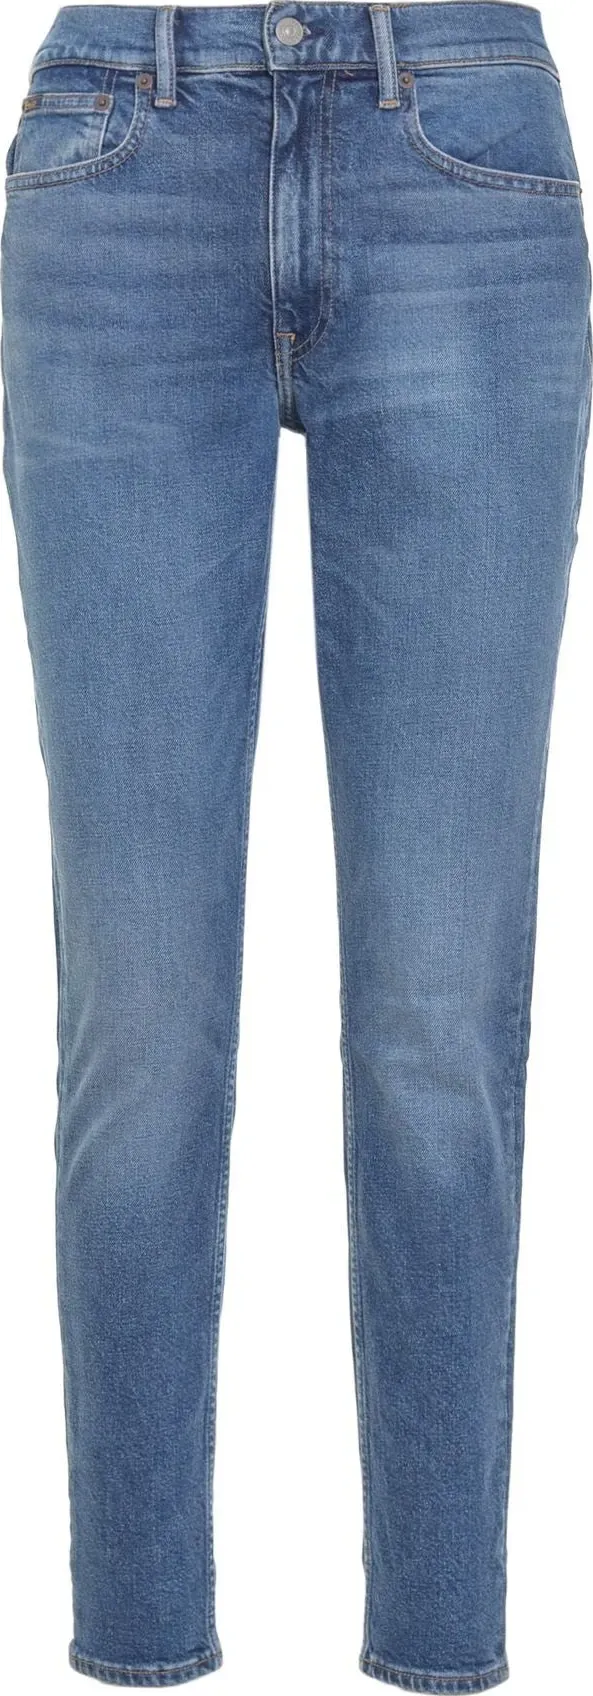 Ralph lauren jeans autunno/inverno 211872461